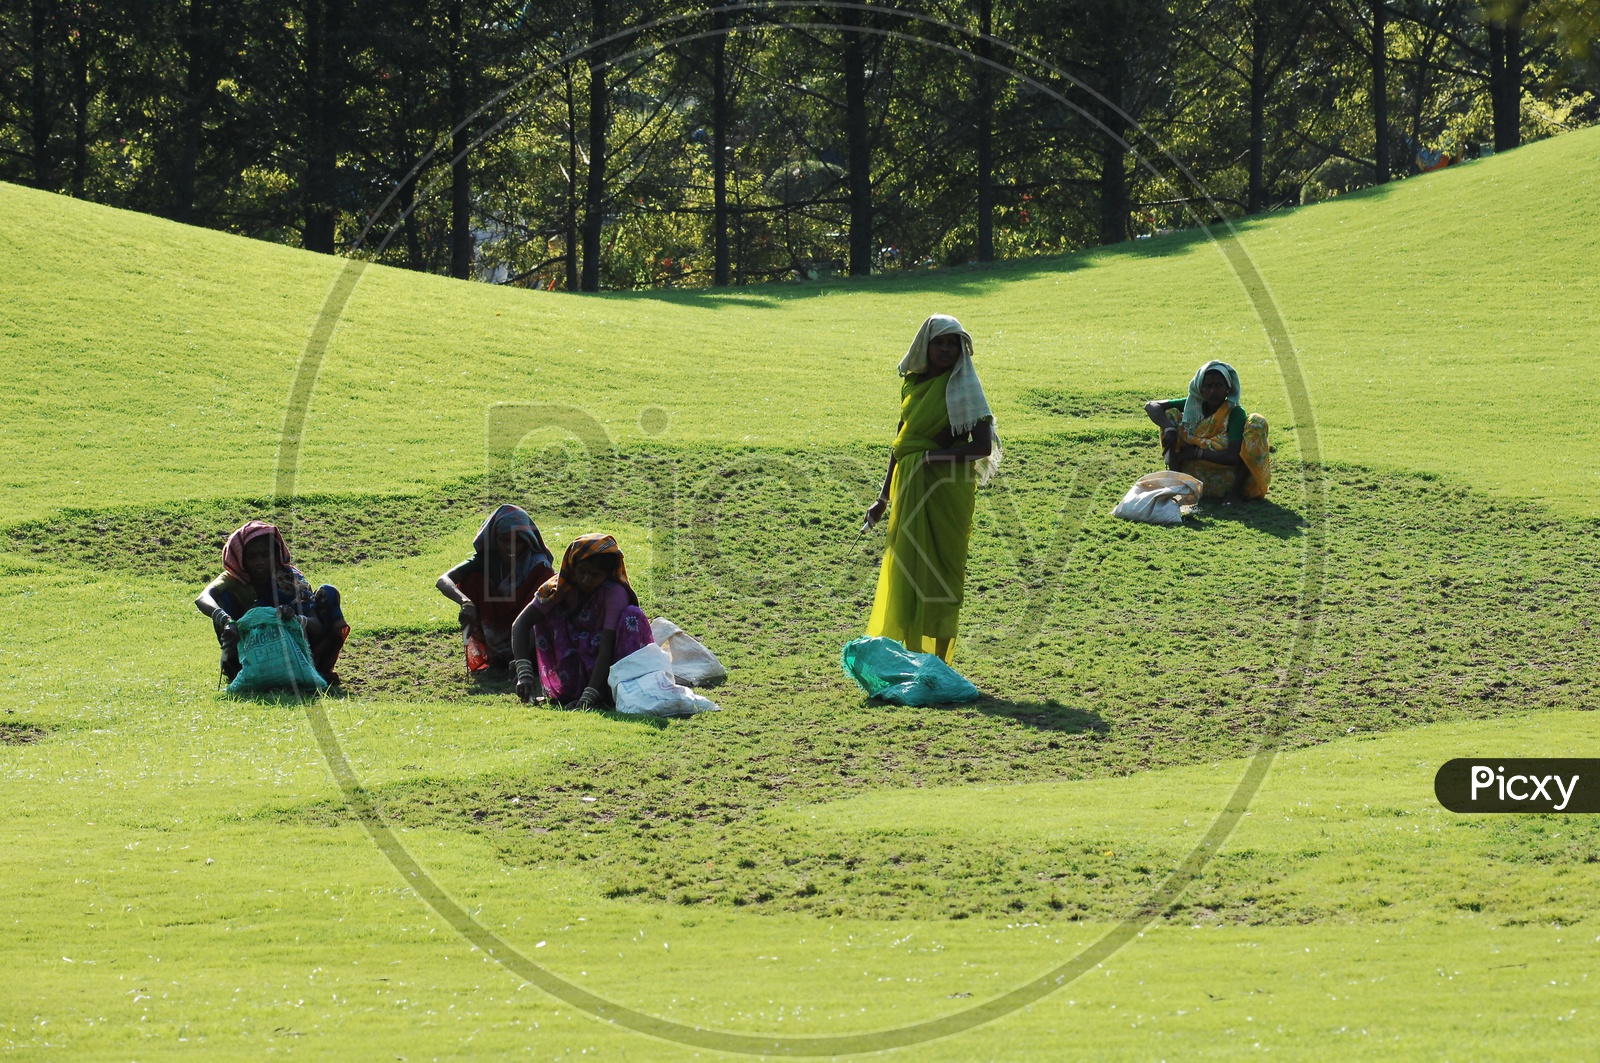 Women  working in grass fields